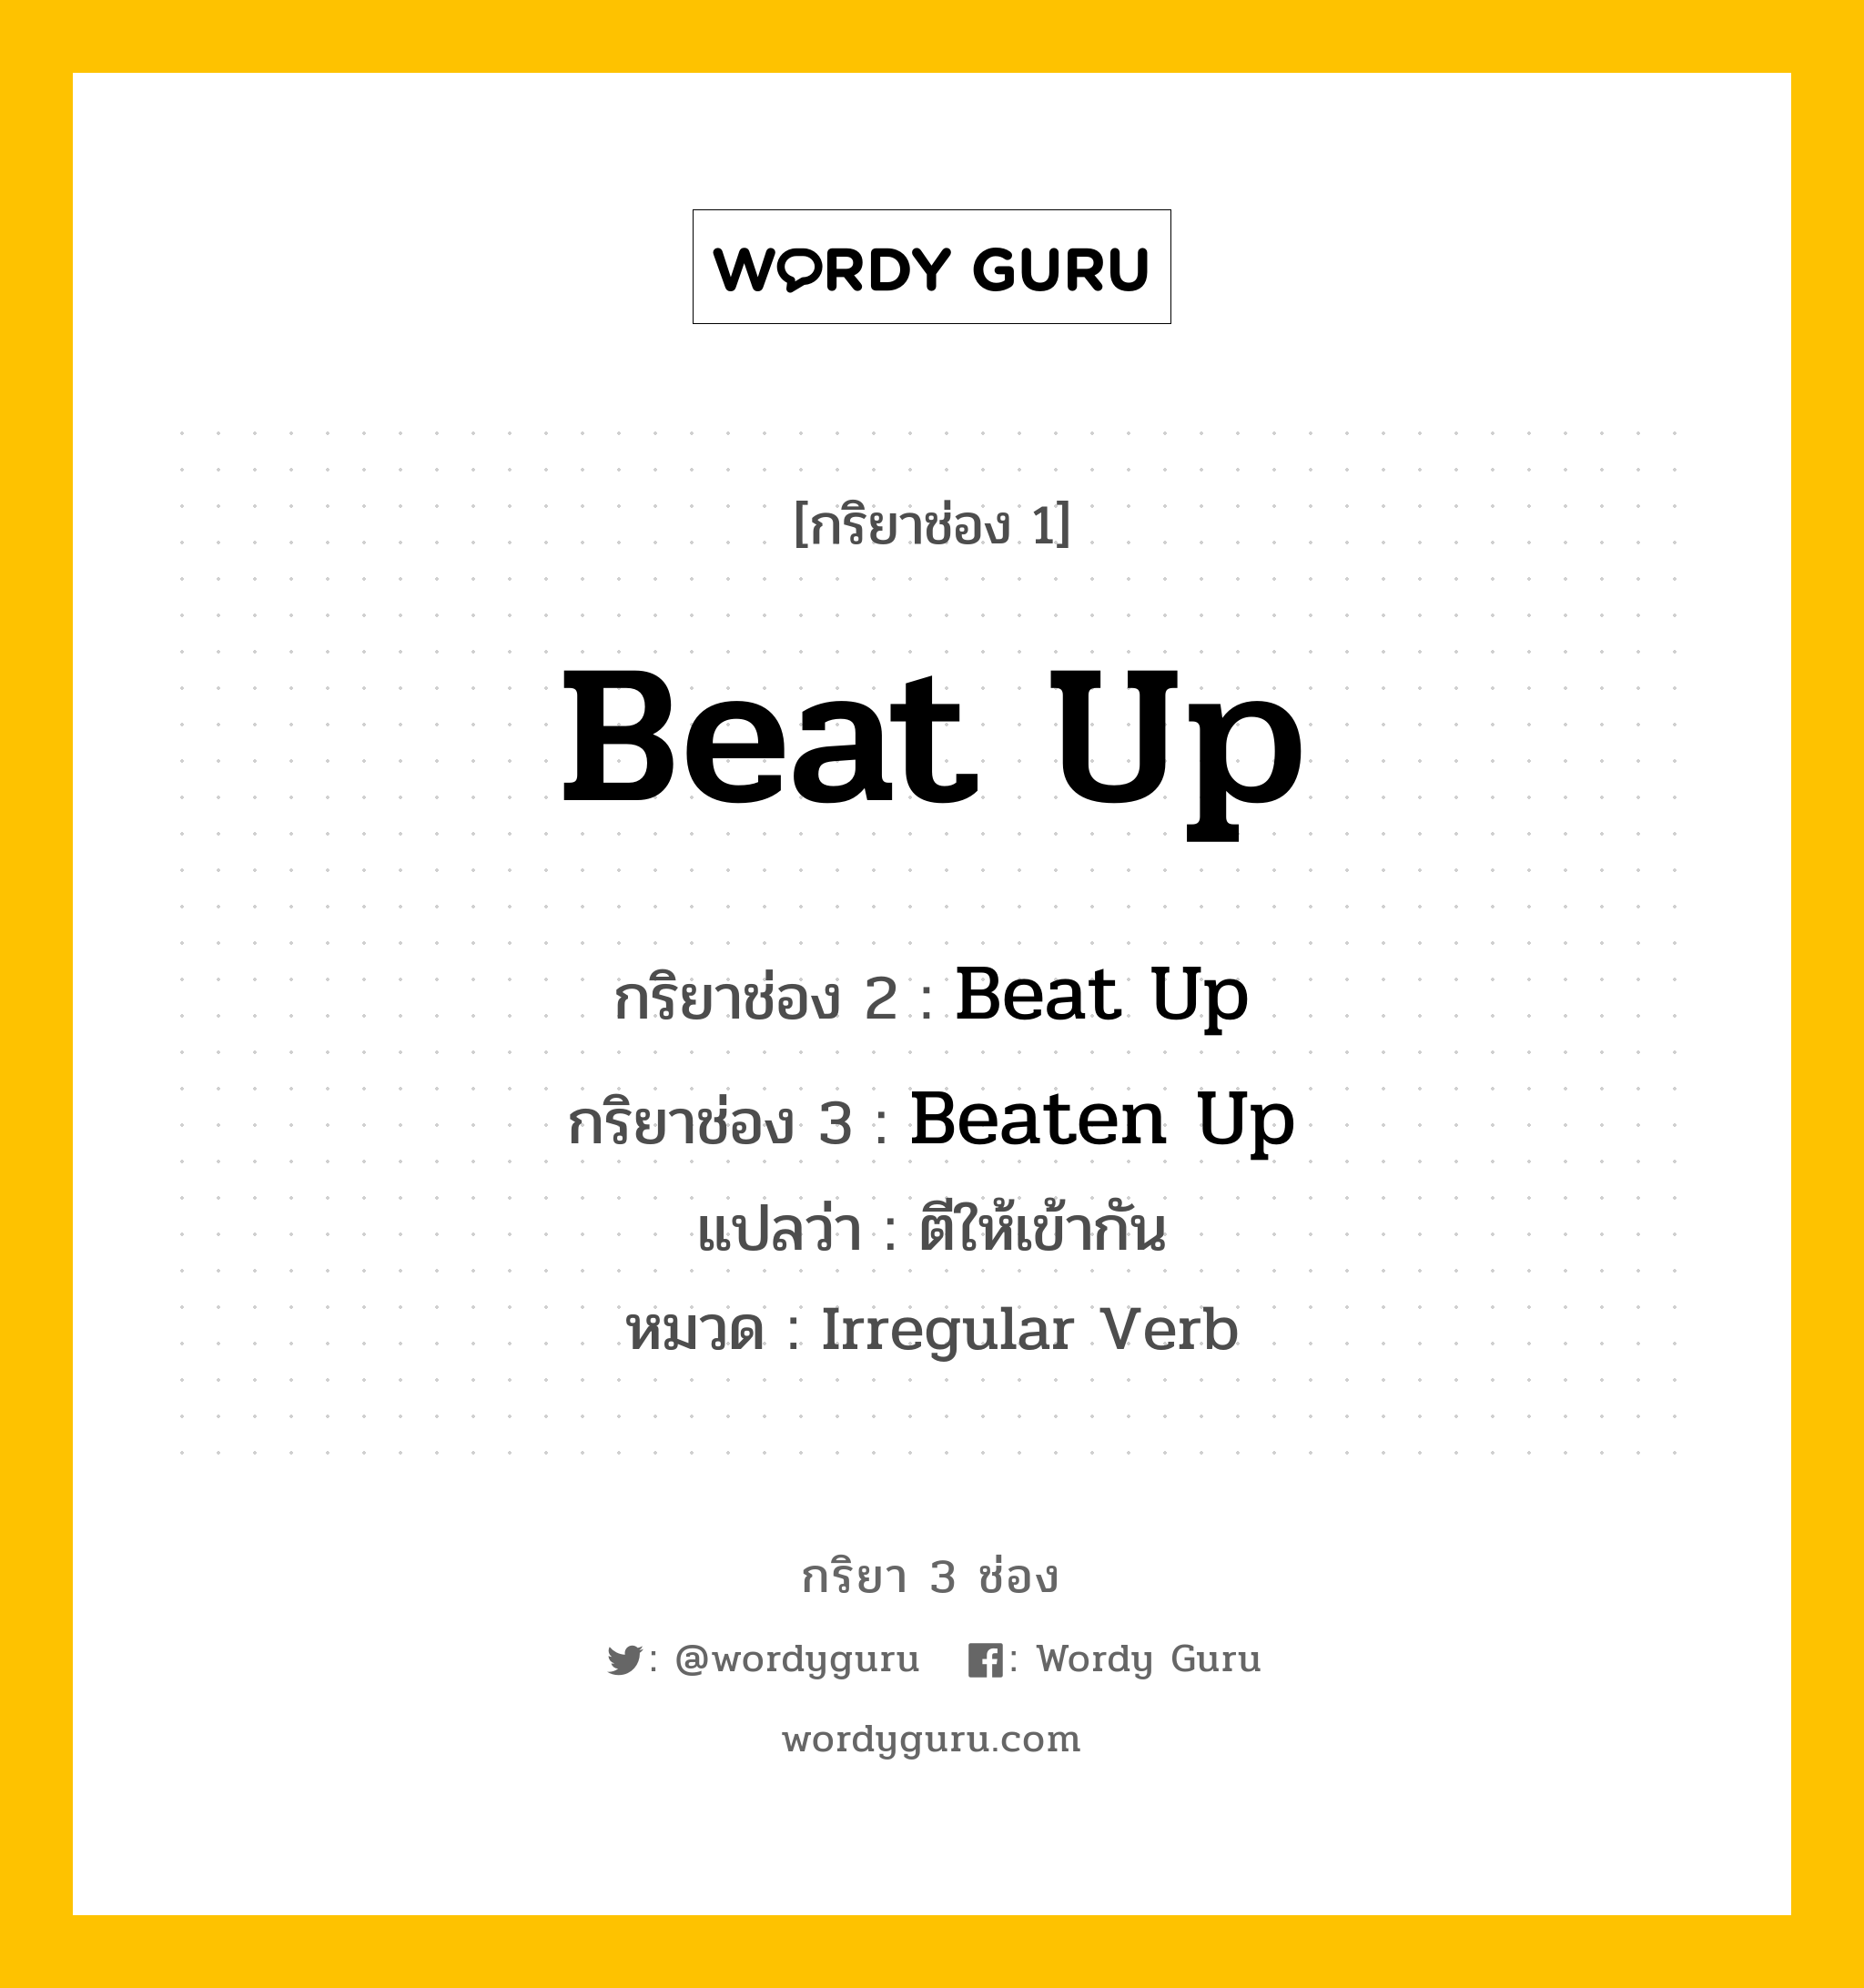 กริยา 3 ช่อง ของ Beat Up คืออะไร? มาดูคำอ่าน คำแปลกันเลย, กริยาช่อง 1 Beat Up กริยาช่อง 2 Beat Up กริยาช่อง 3 Beaten Up แปลว่า ตีให้เข้ากัน หมวด Irregular Verb หมวด Irregular Verb